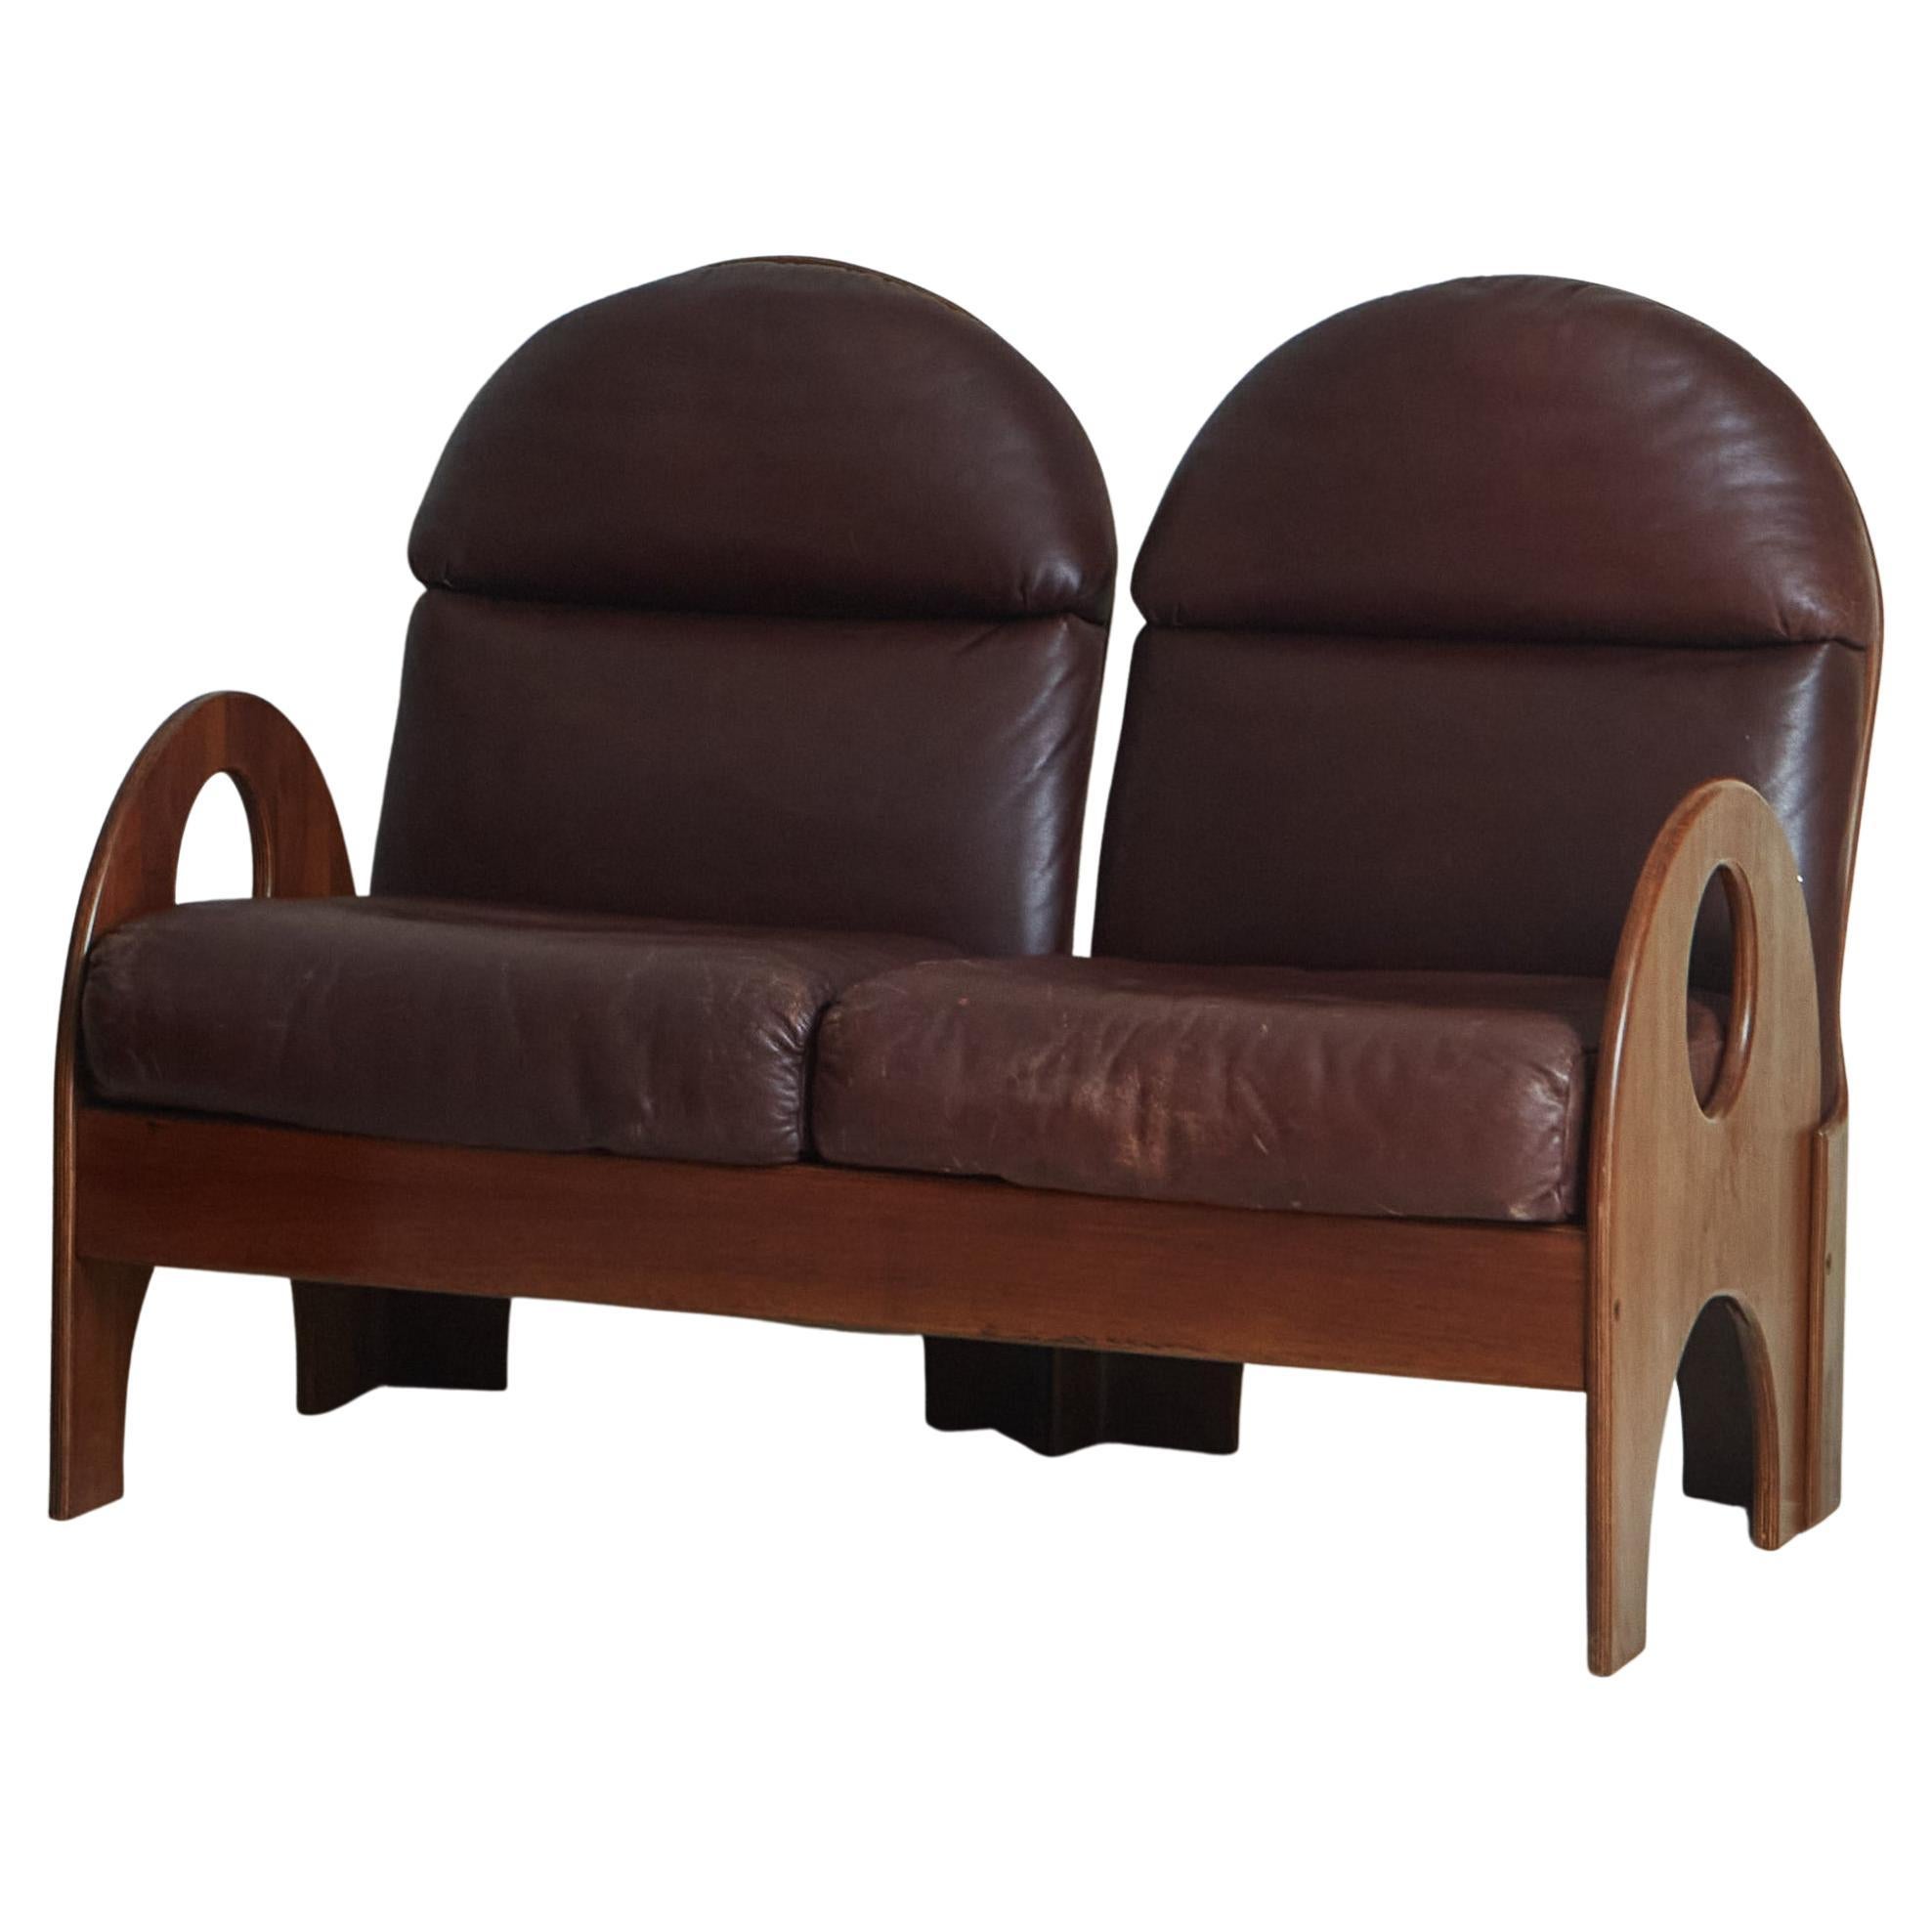 Walnut + Leather 2 Seat ‘Arcata’ Sofas by Gae Aulenti for Poltronova, Italy 1968